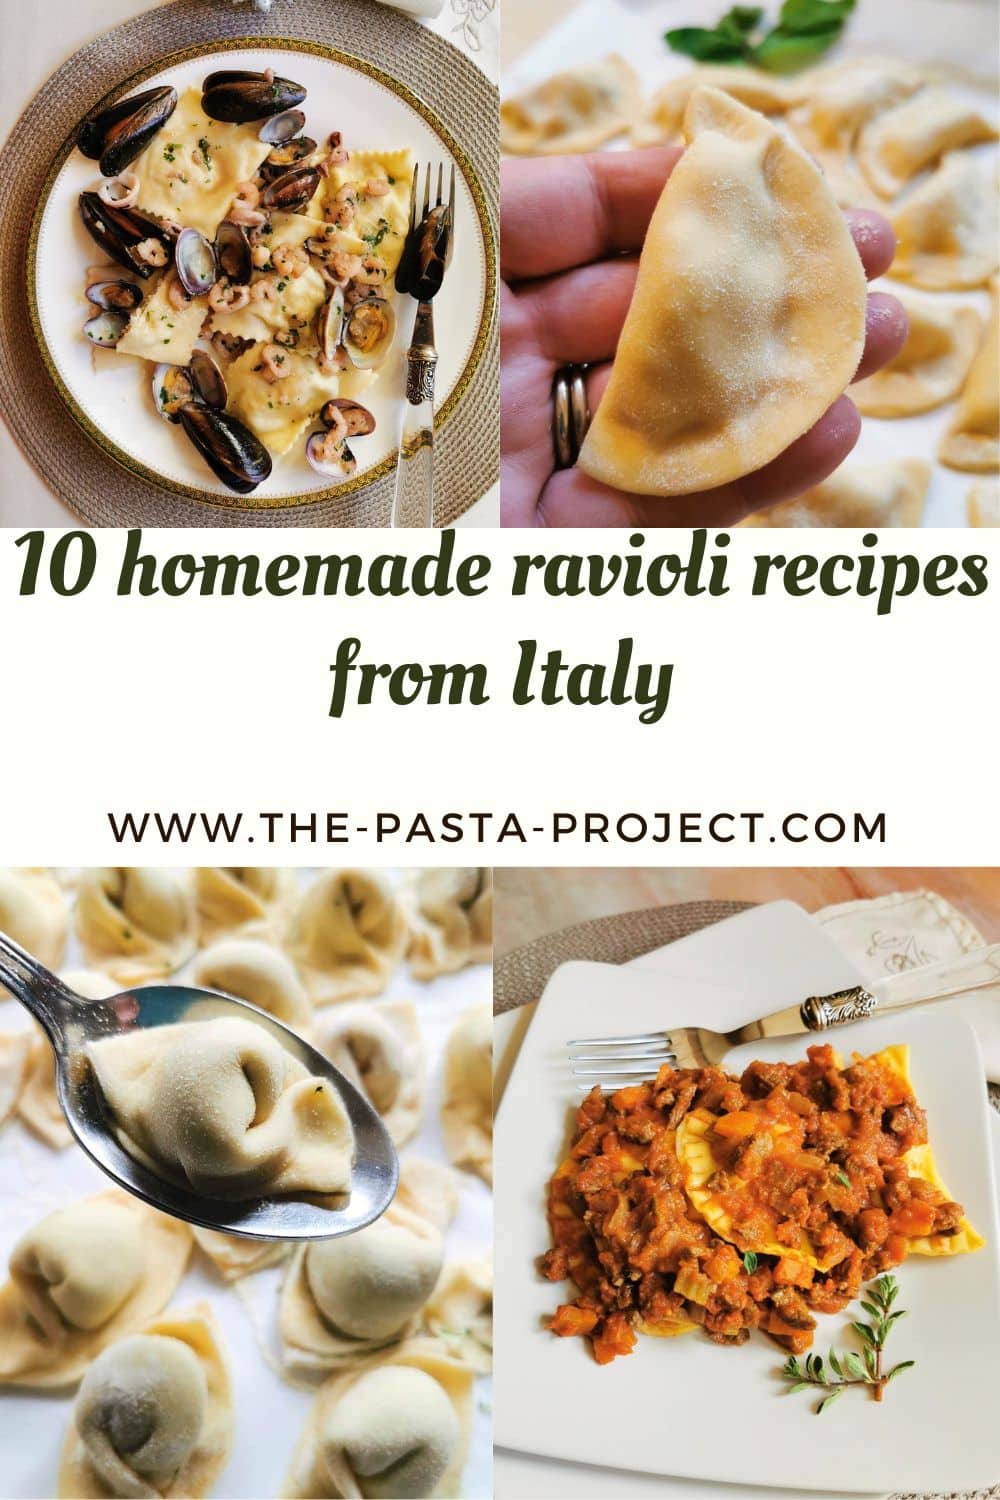 10 homemade ravioli recipes from Italy.